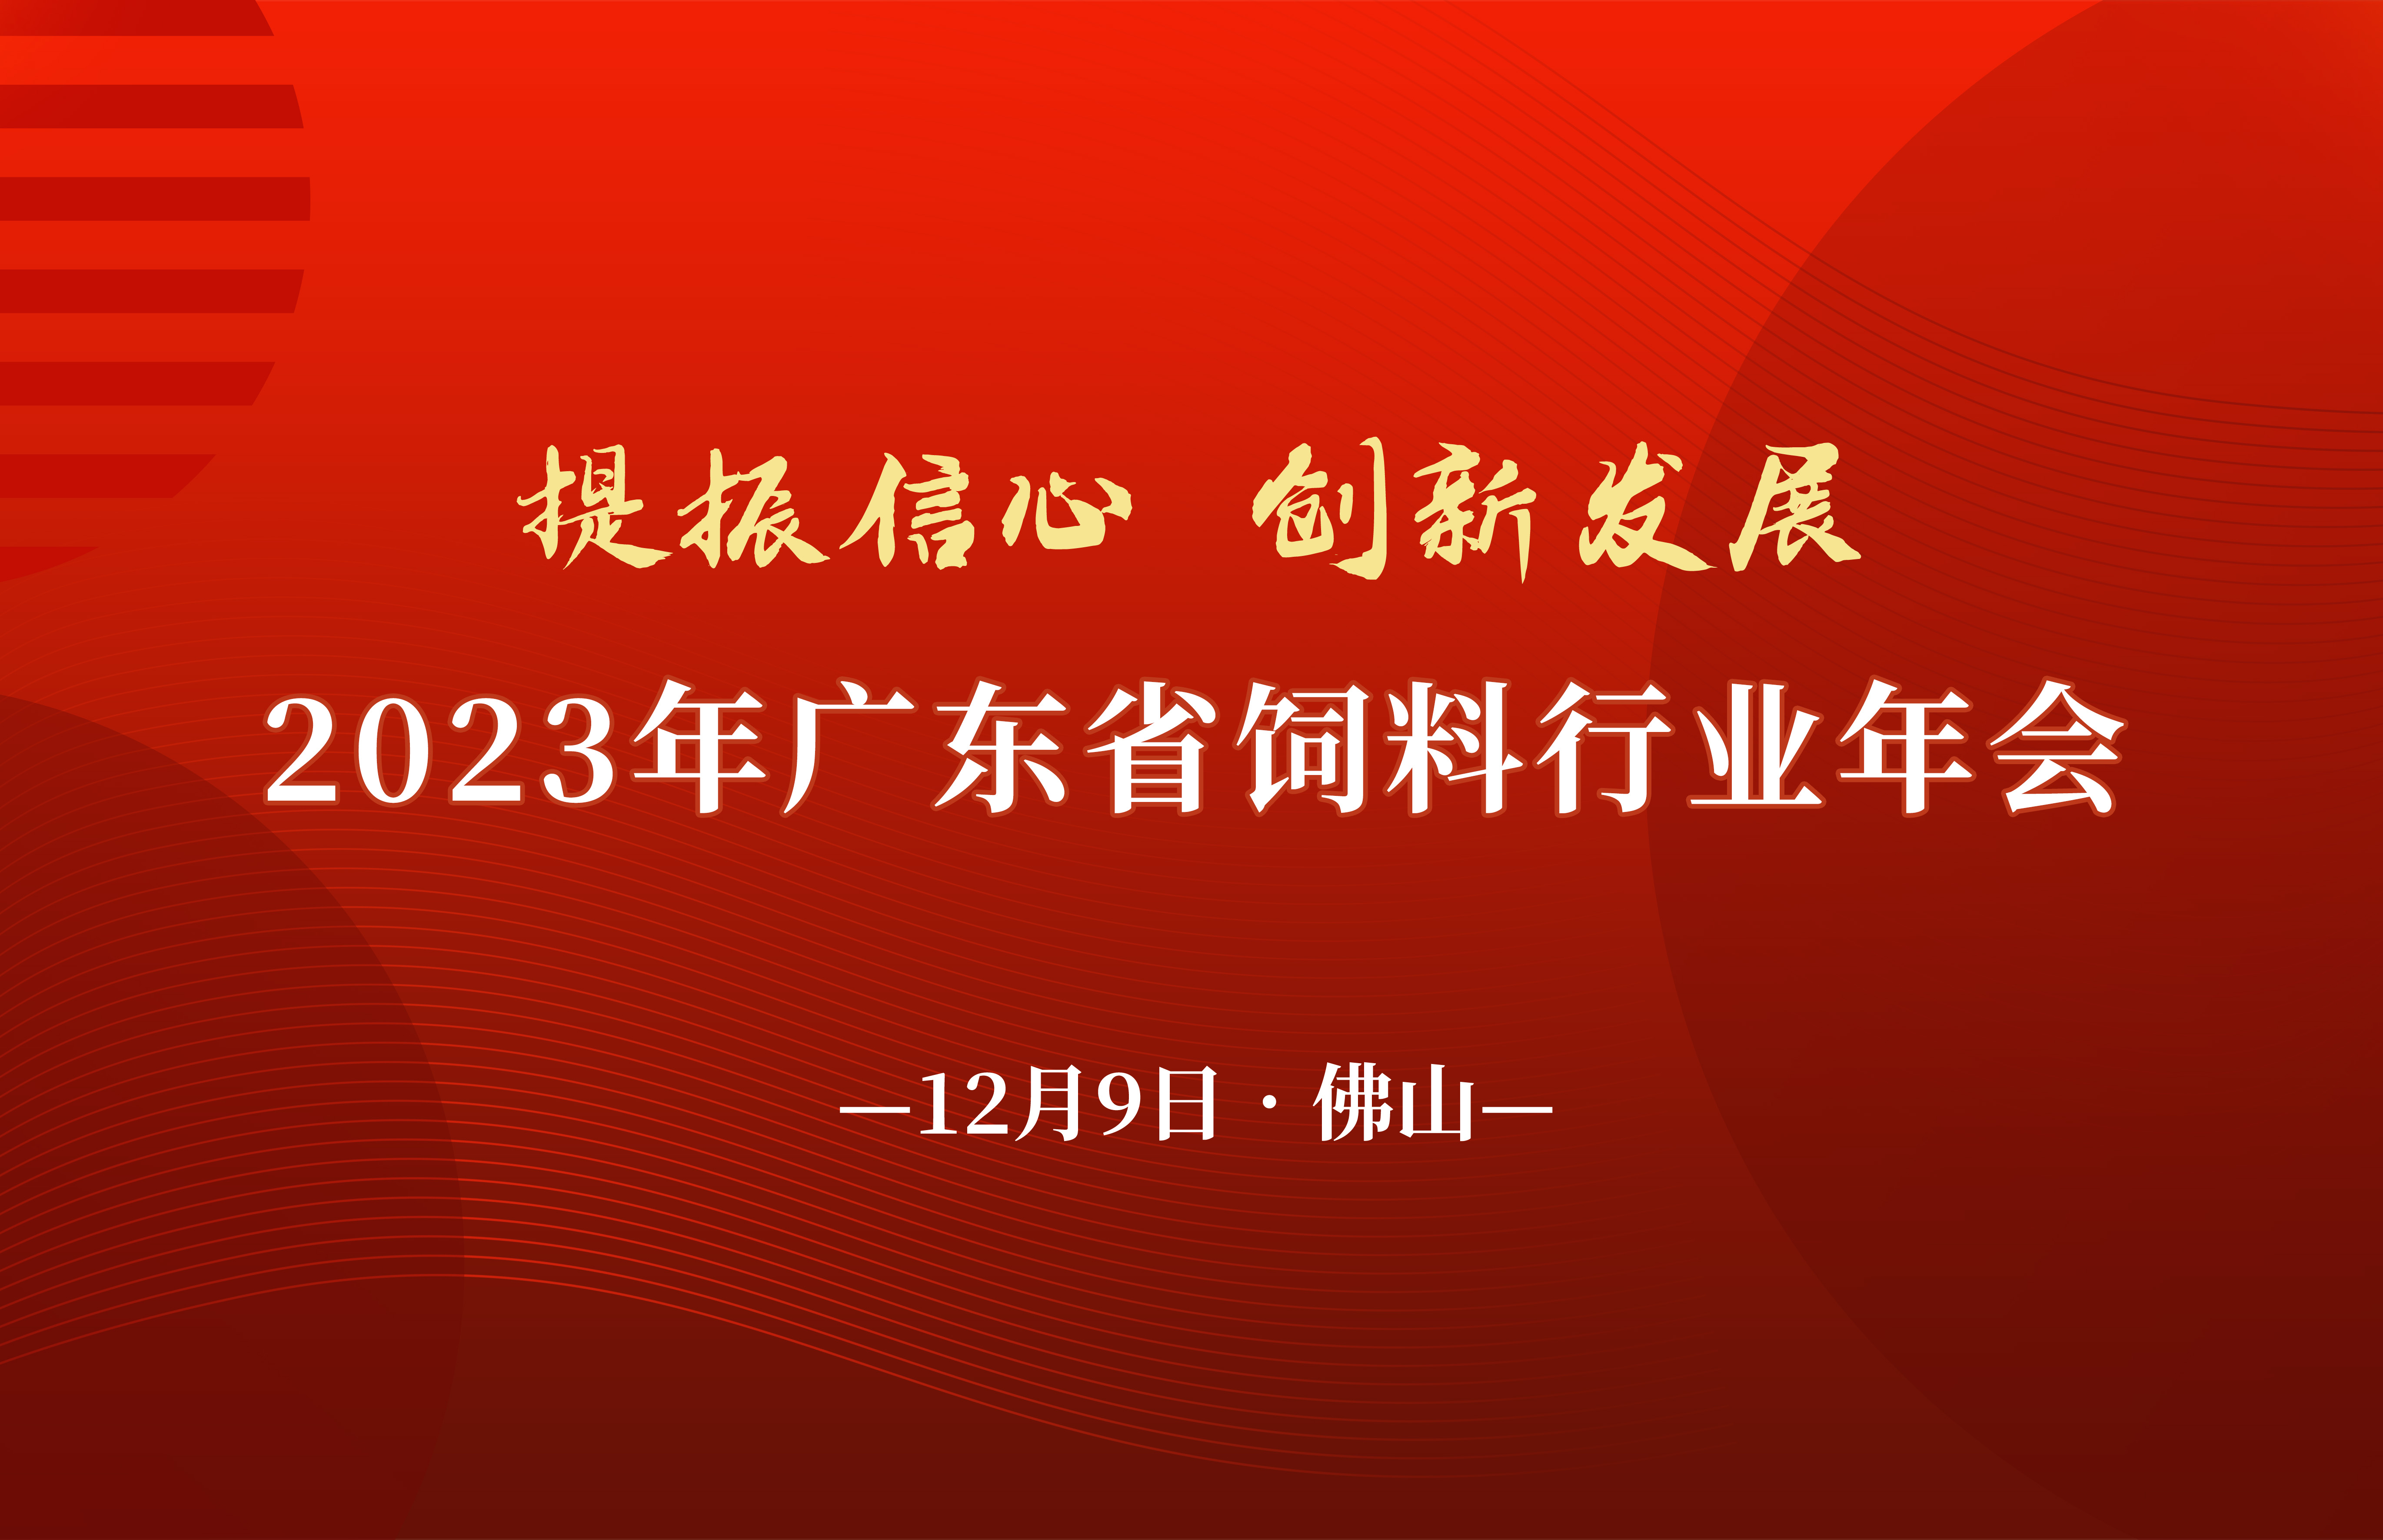 关于2023年广东省饲料行业年会的通知